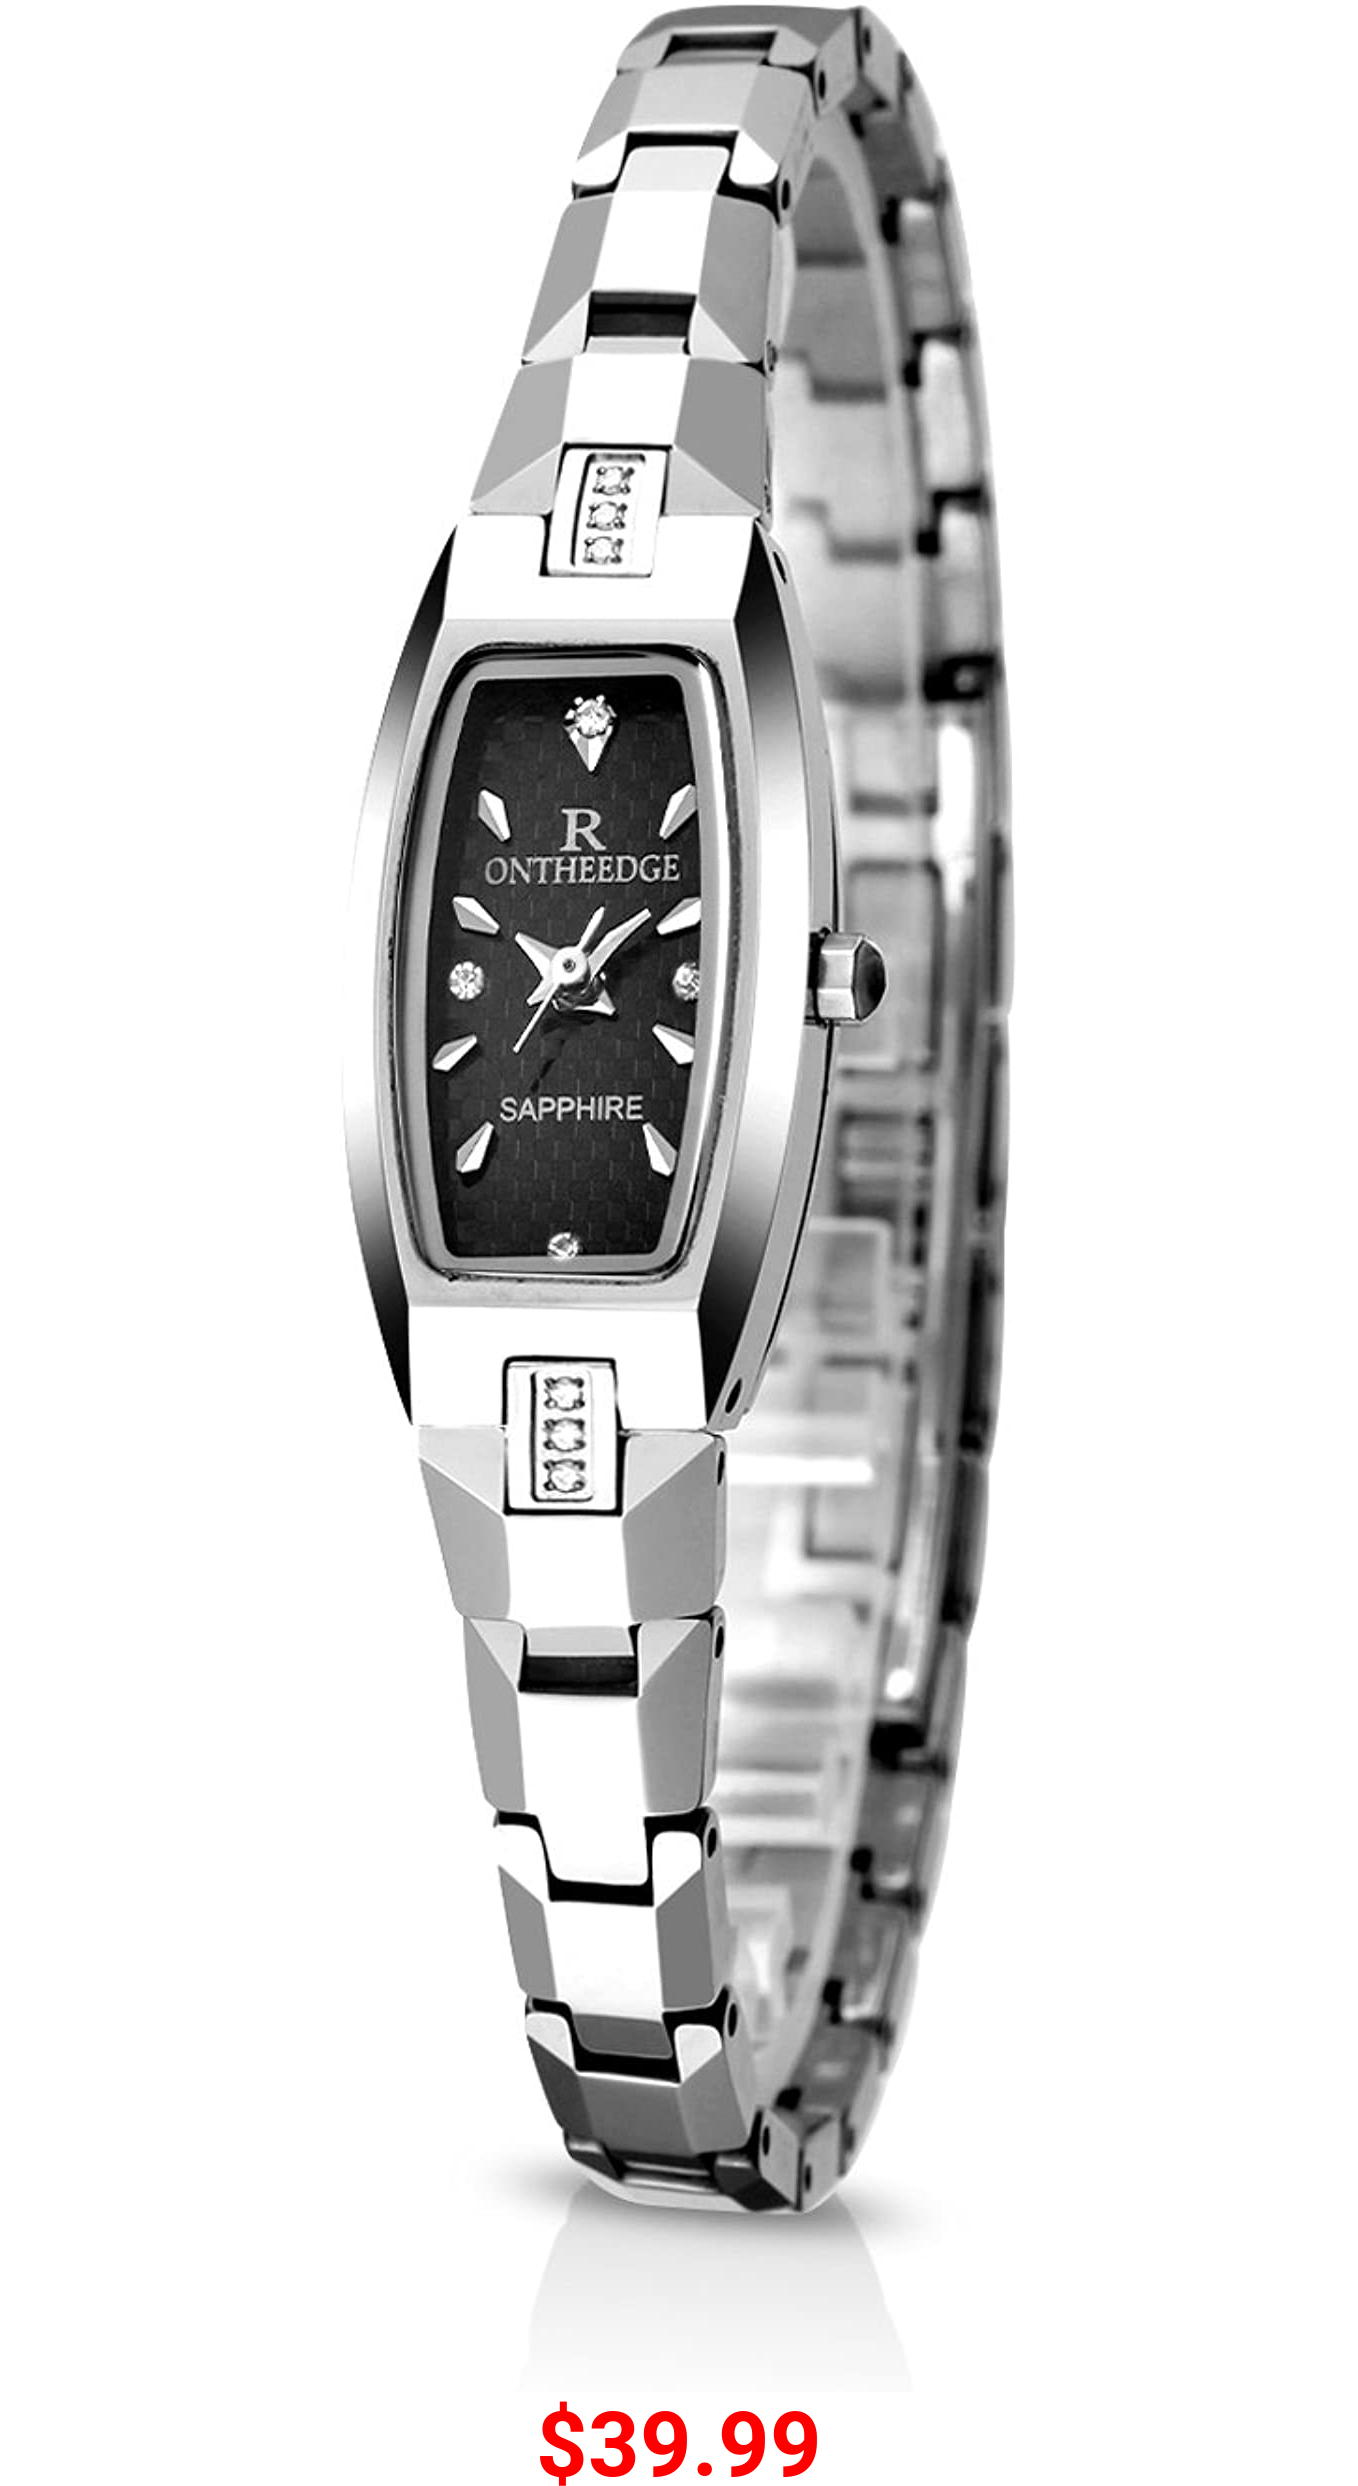 RORIOS Fashion Quartz Watches Tungsten Steel Band Waterproof Elegant Wrist Watch for Girl/Women